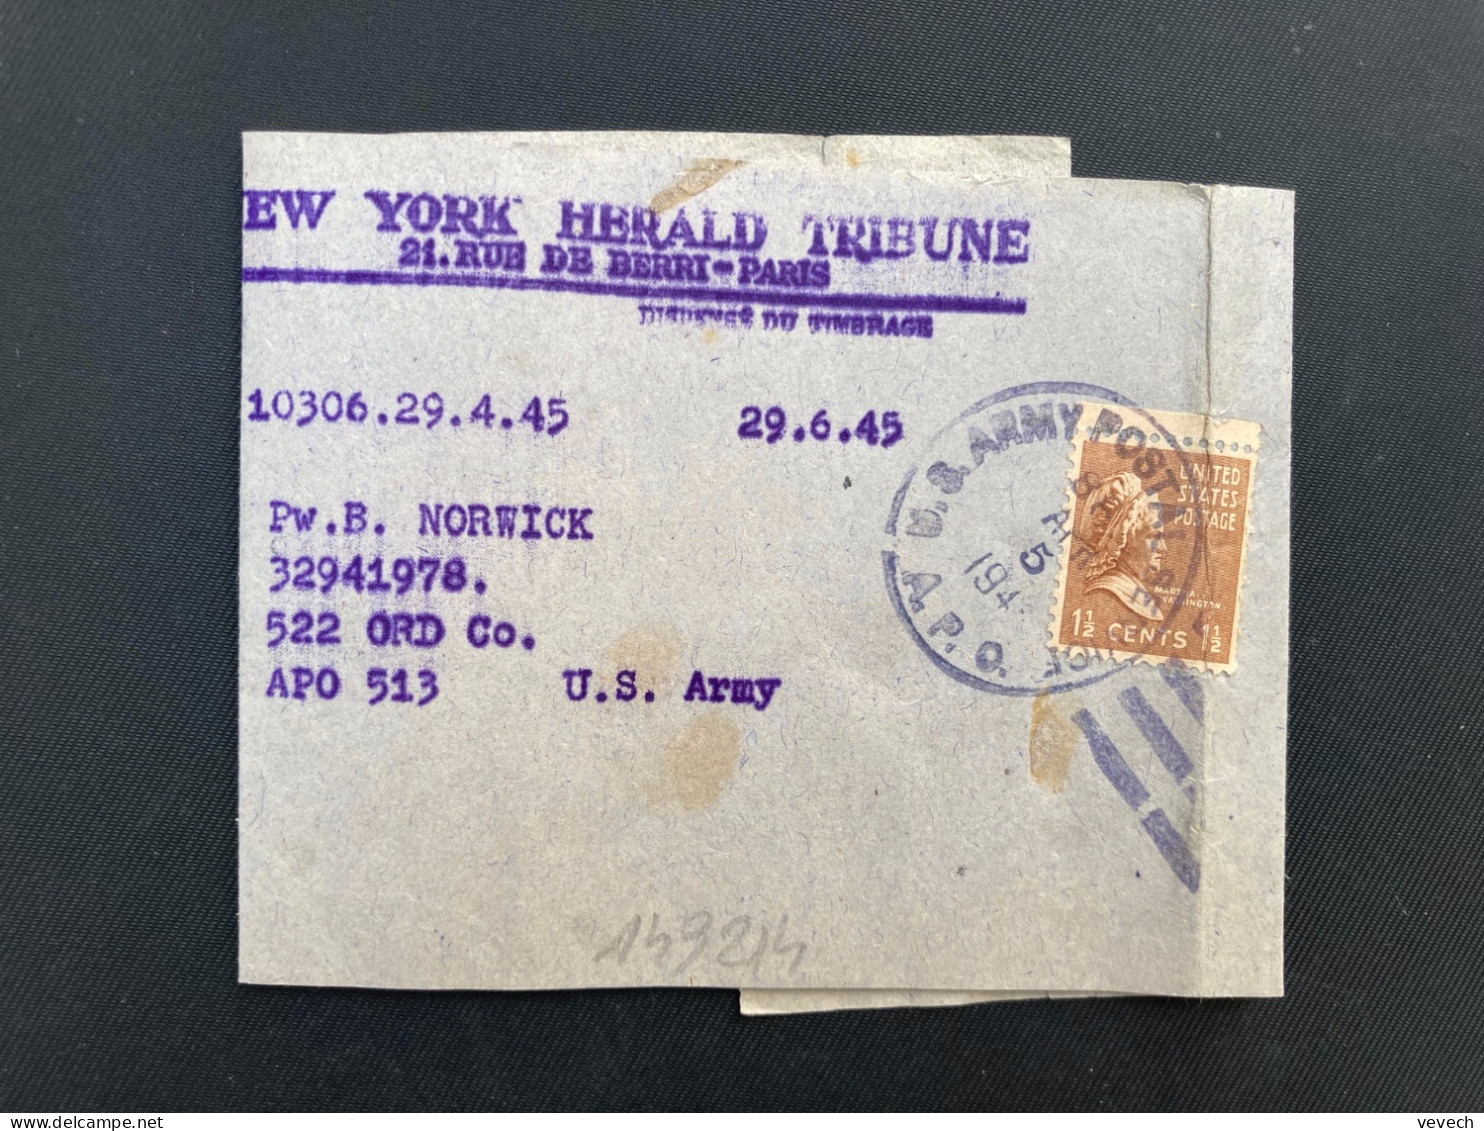 BJ NEW YORK HERALD TRIBUNE Pour APO 513 TP WASHINGTON 1 1/2c OBL.MEC.MAI 24 1945 APO - Marcophilie